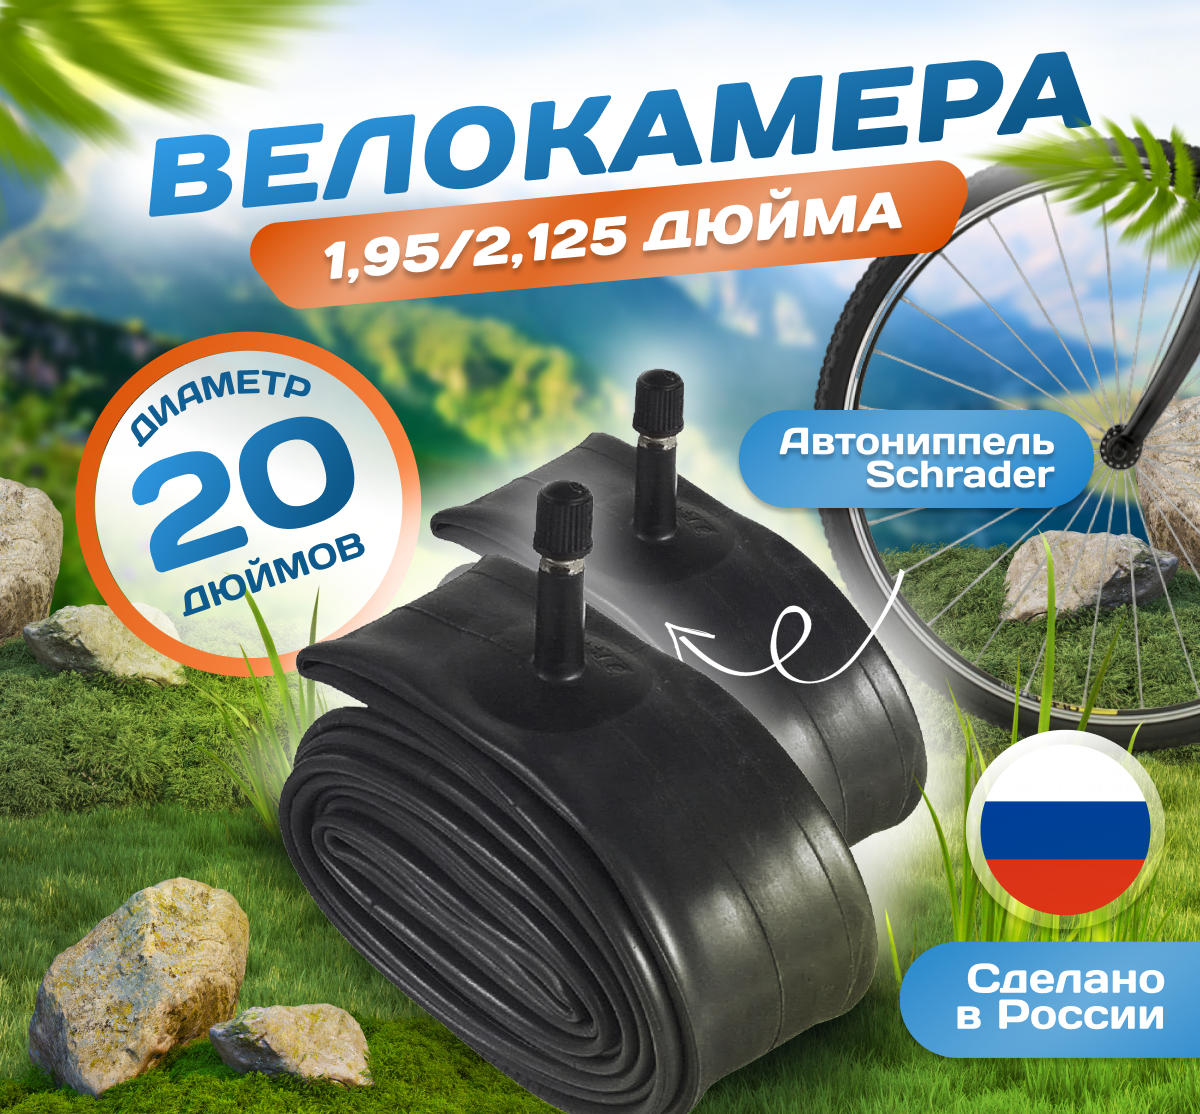 Камера для велосипеда 20х1,95/2,125 (Комплект 2 шт) (47/57-406), Российского производства. Автониппель Schrader 32mm